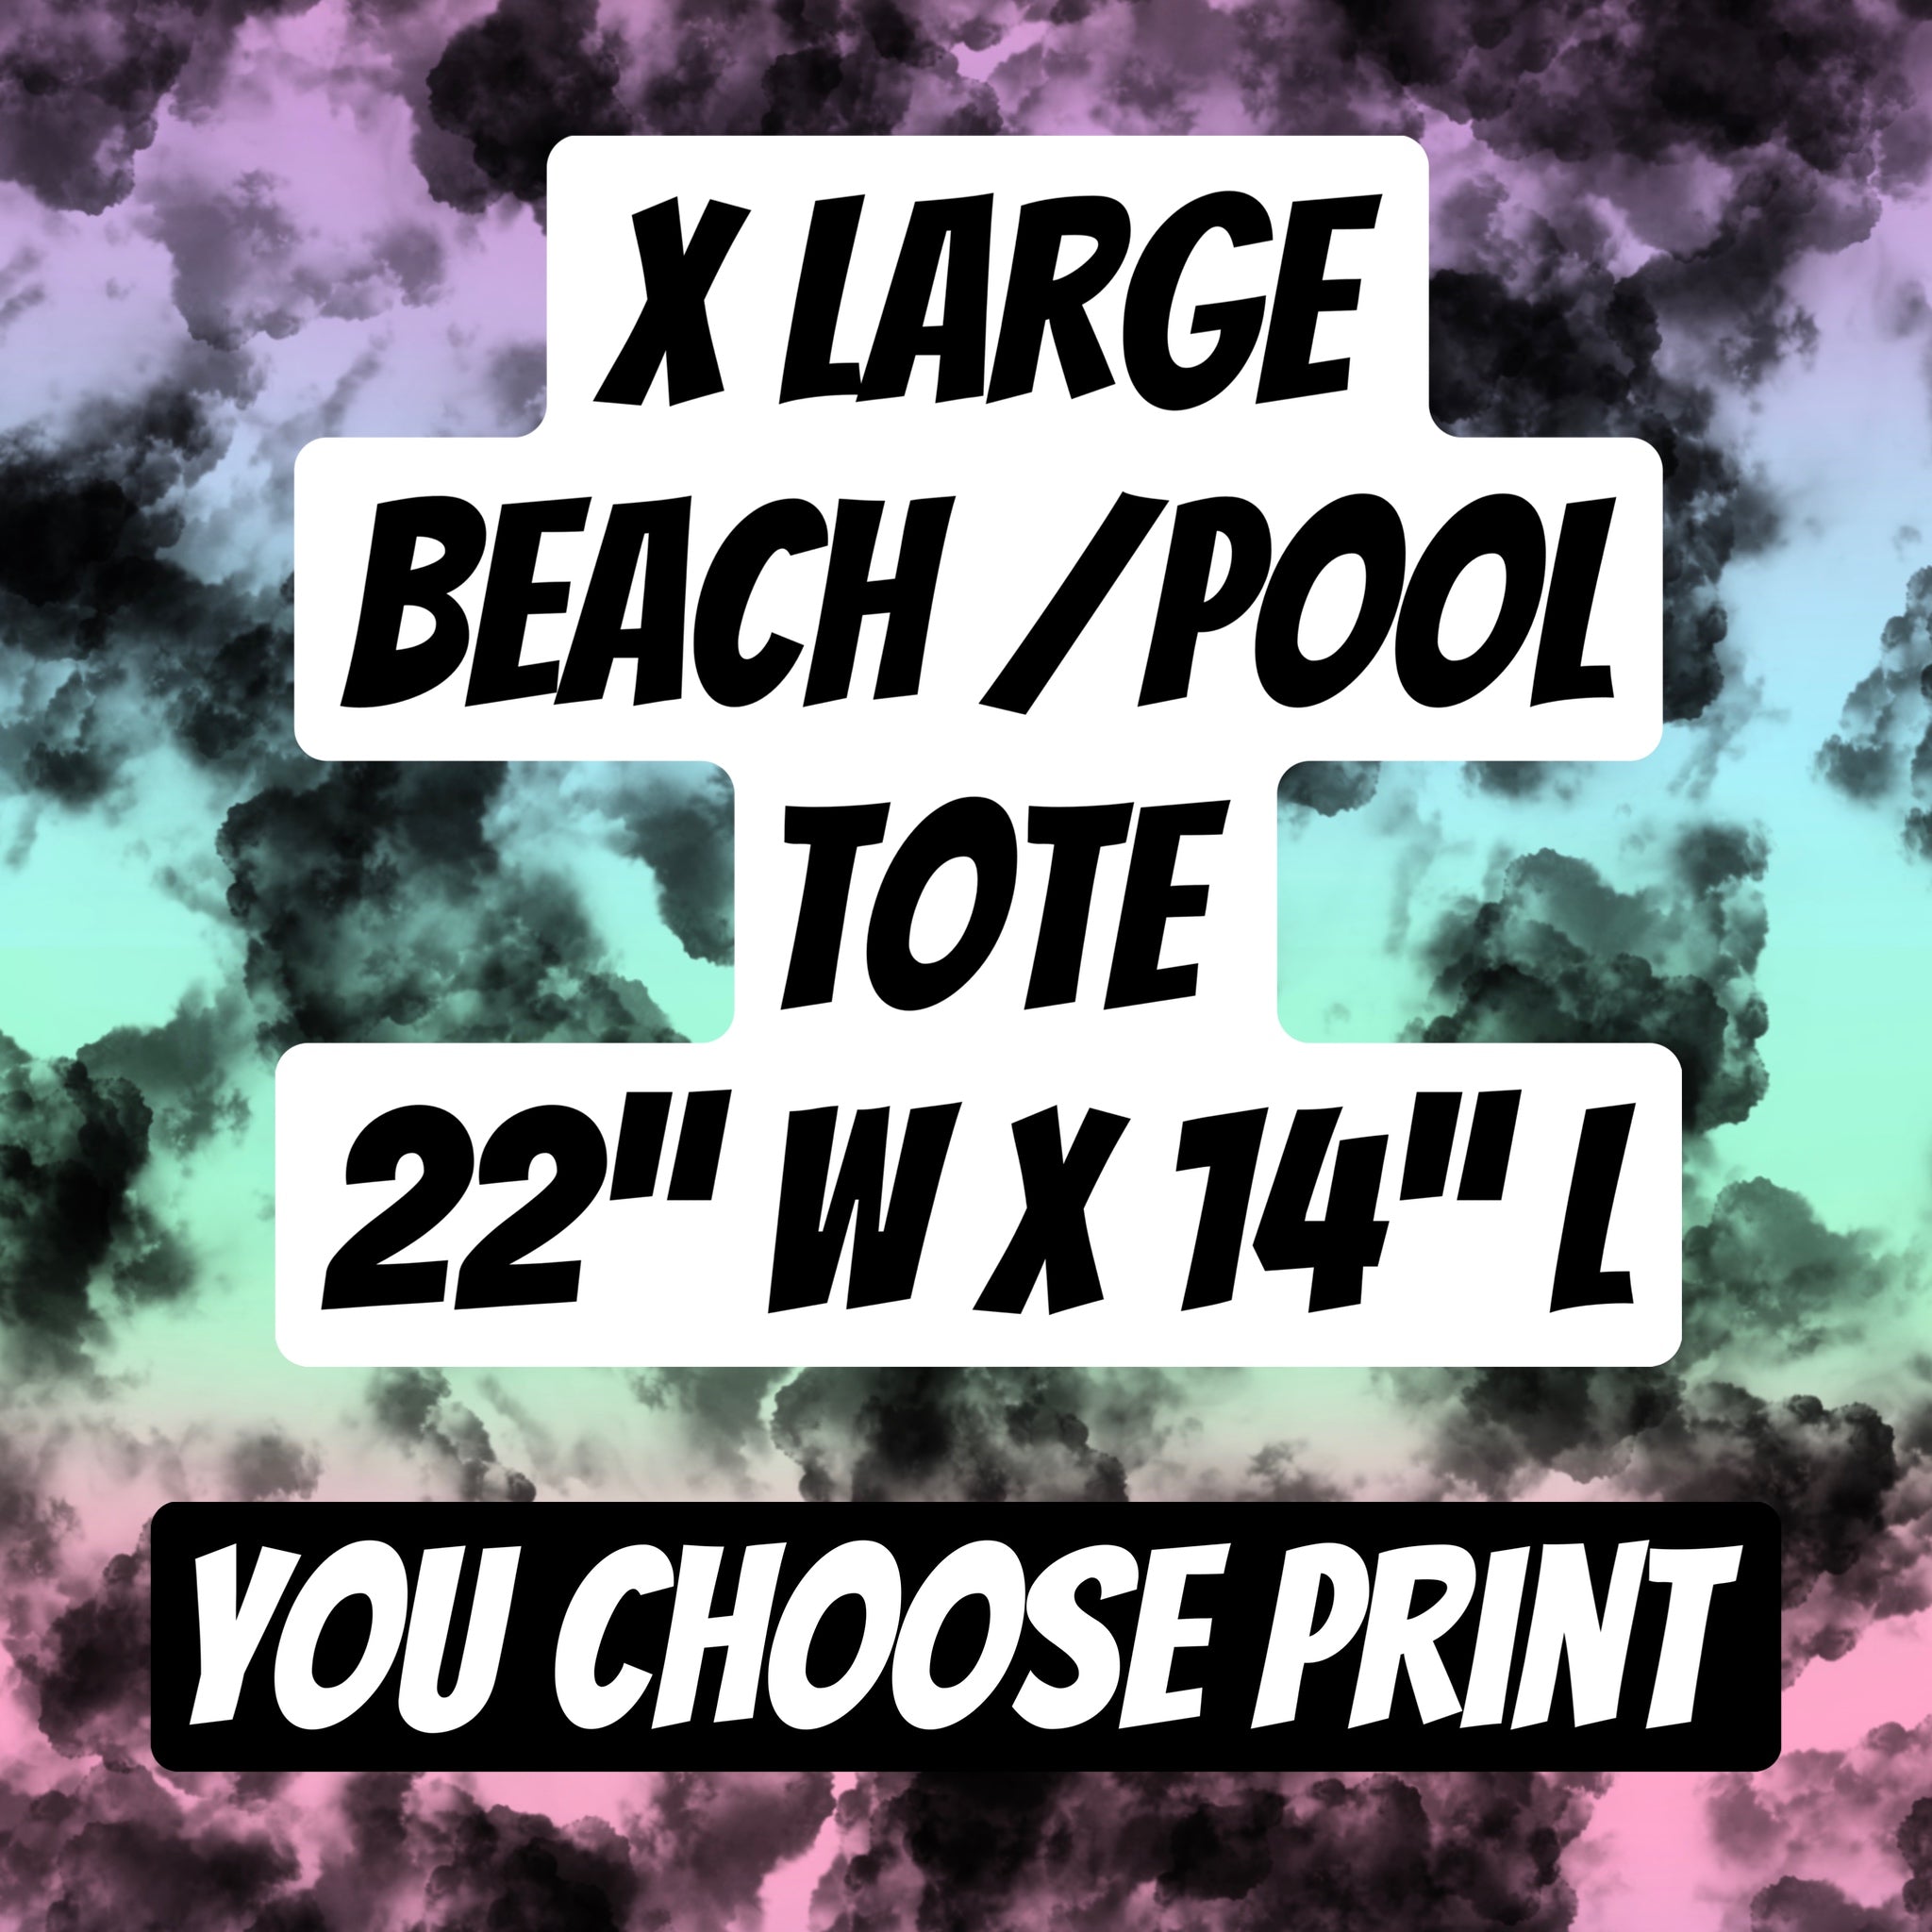 XLarge beach /pool tote bag